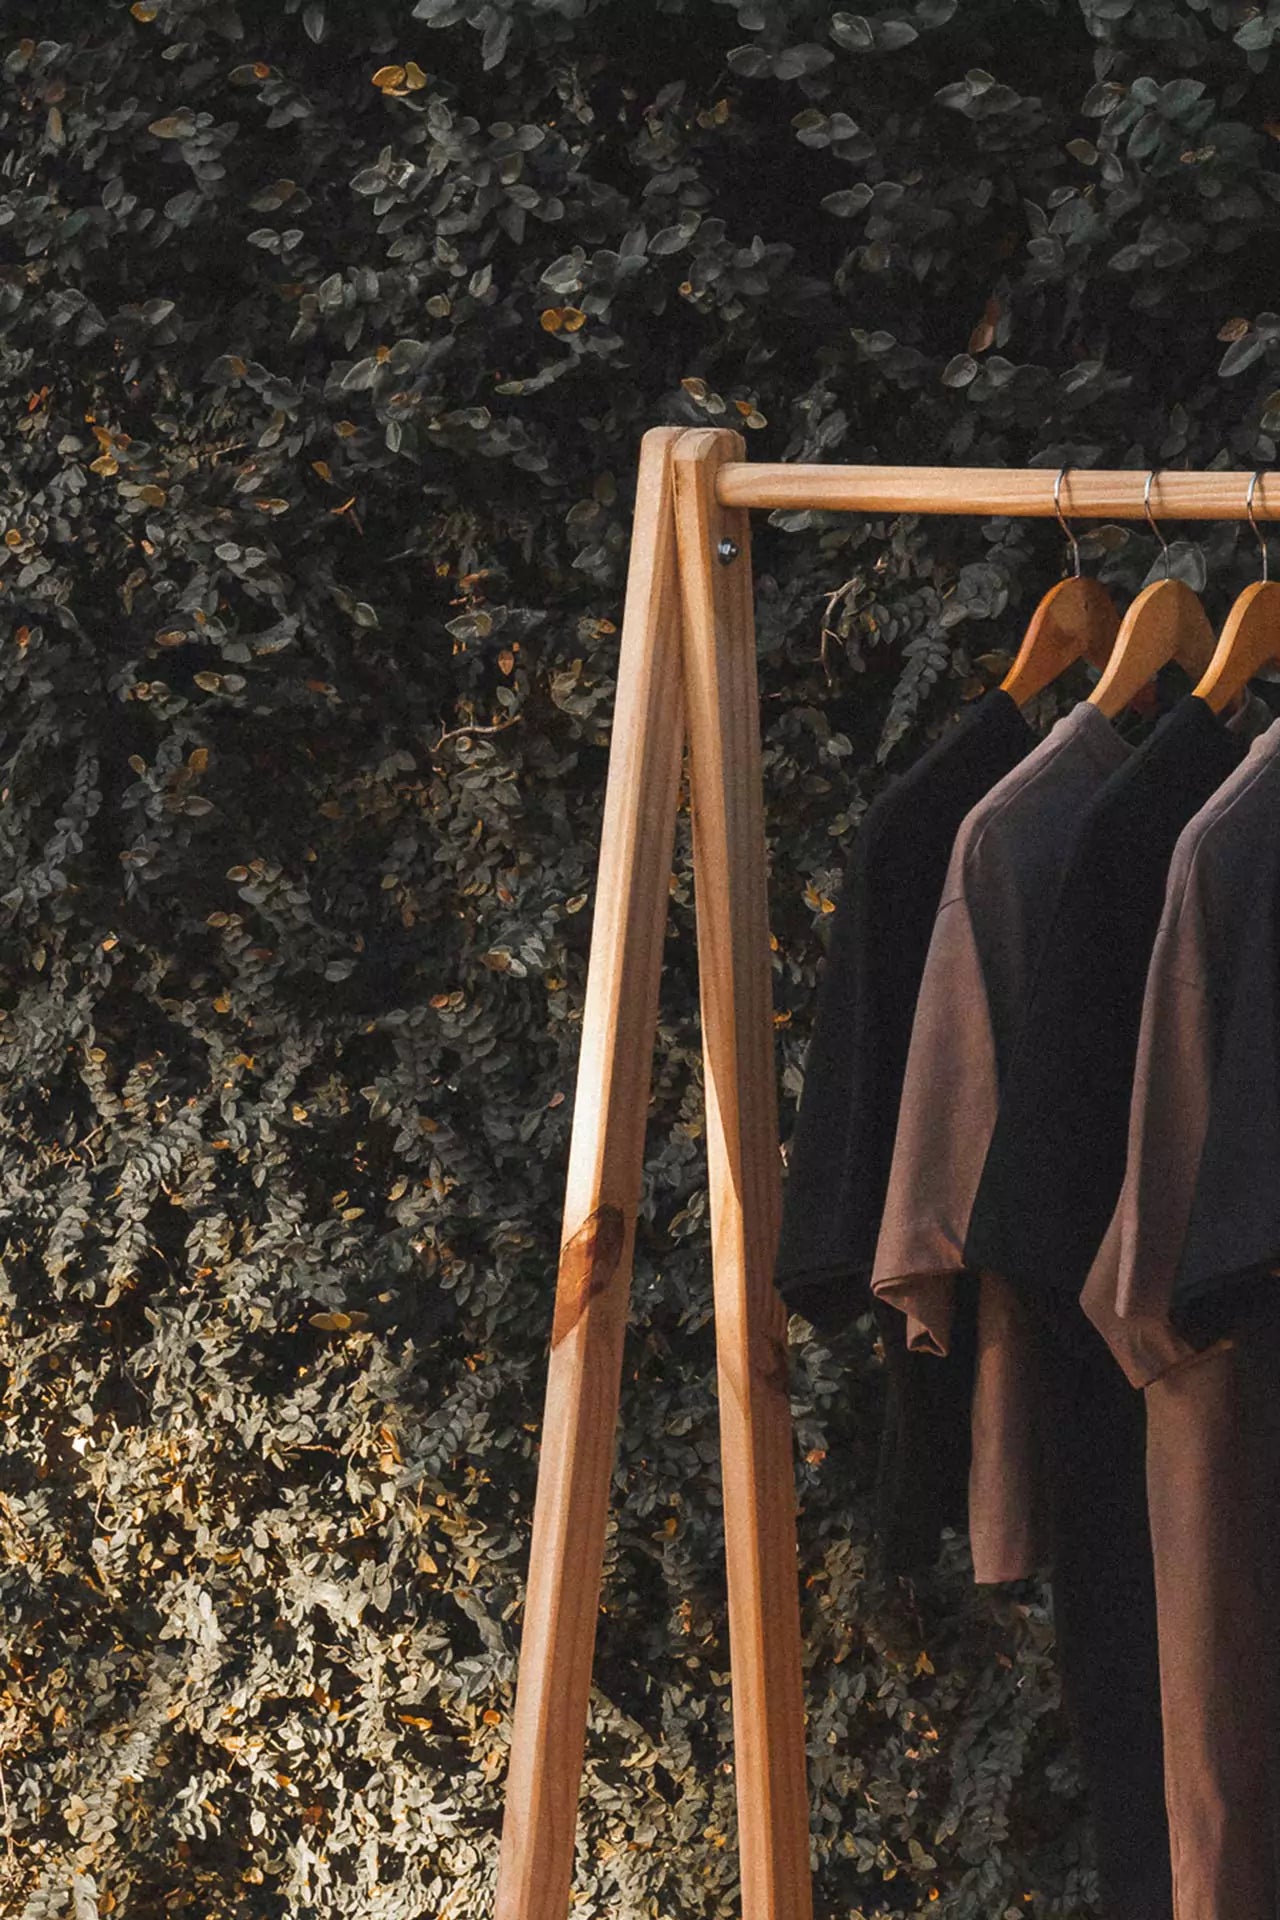 Nova coleção de t-shirt oversized. Compre online roupas sustentáveis na MINIMADEIA.